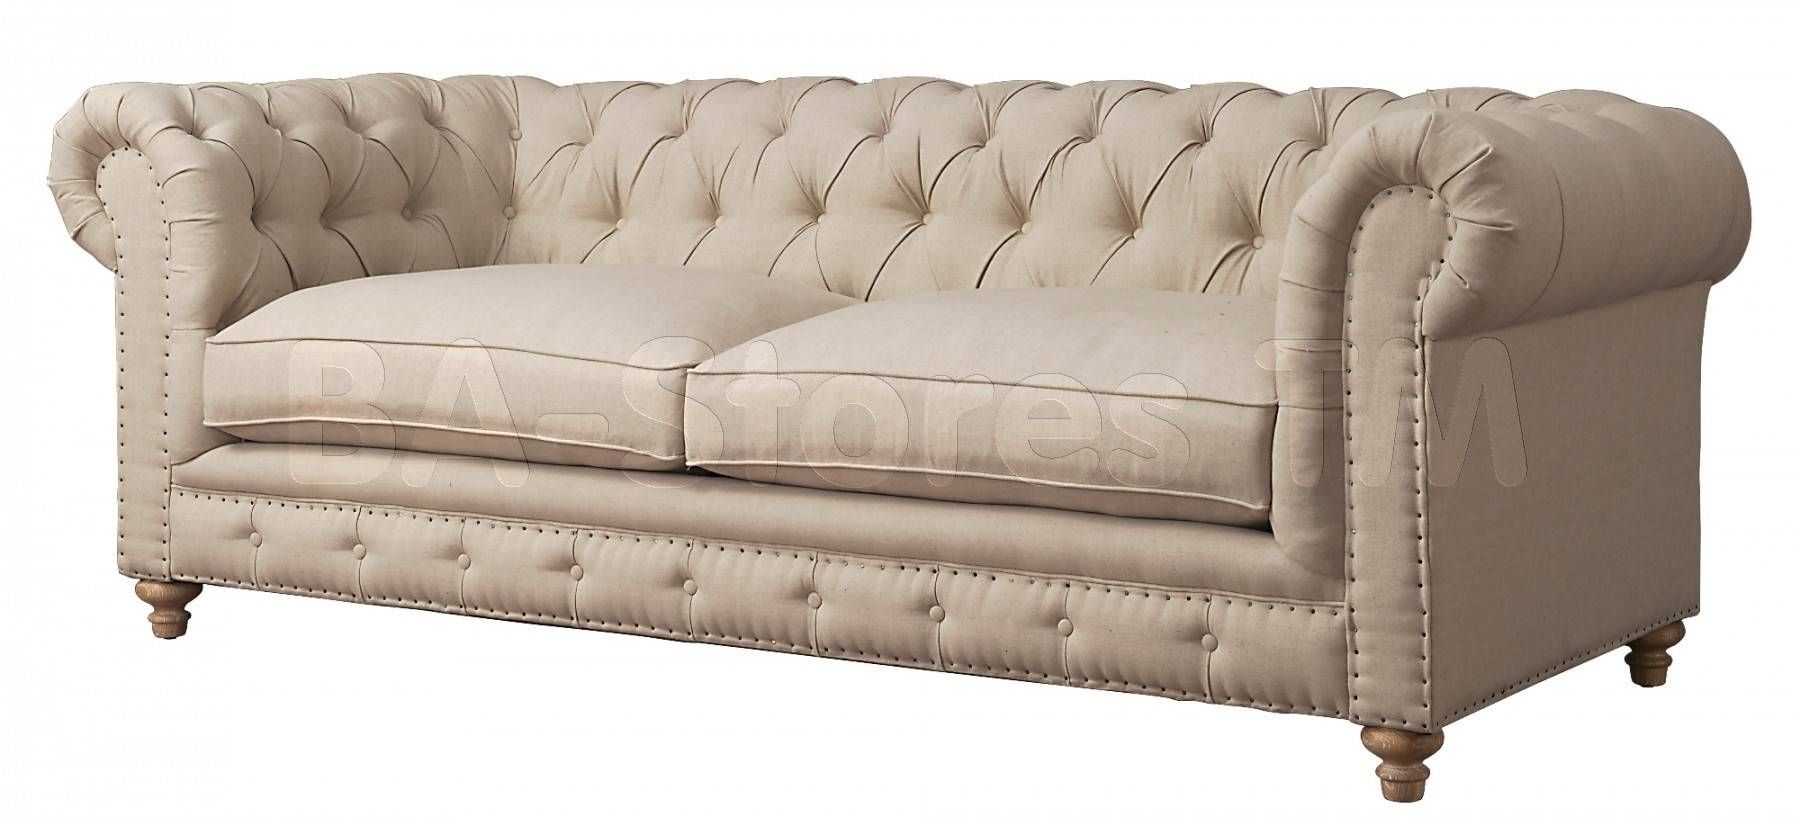 $1467.90 Oxford Beige Linen Sofa | Sofas Tov S19/4 For Oxford Sofas (Photo 24 of 30)